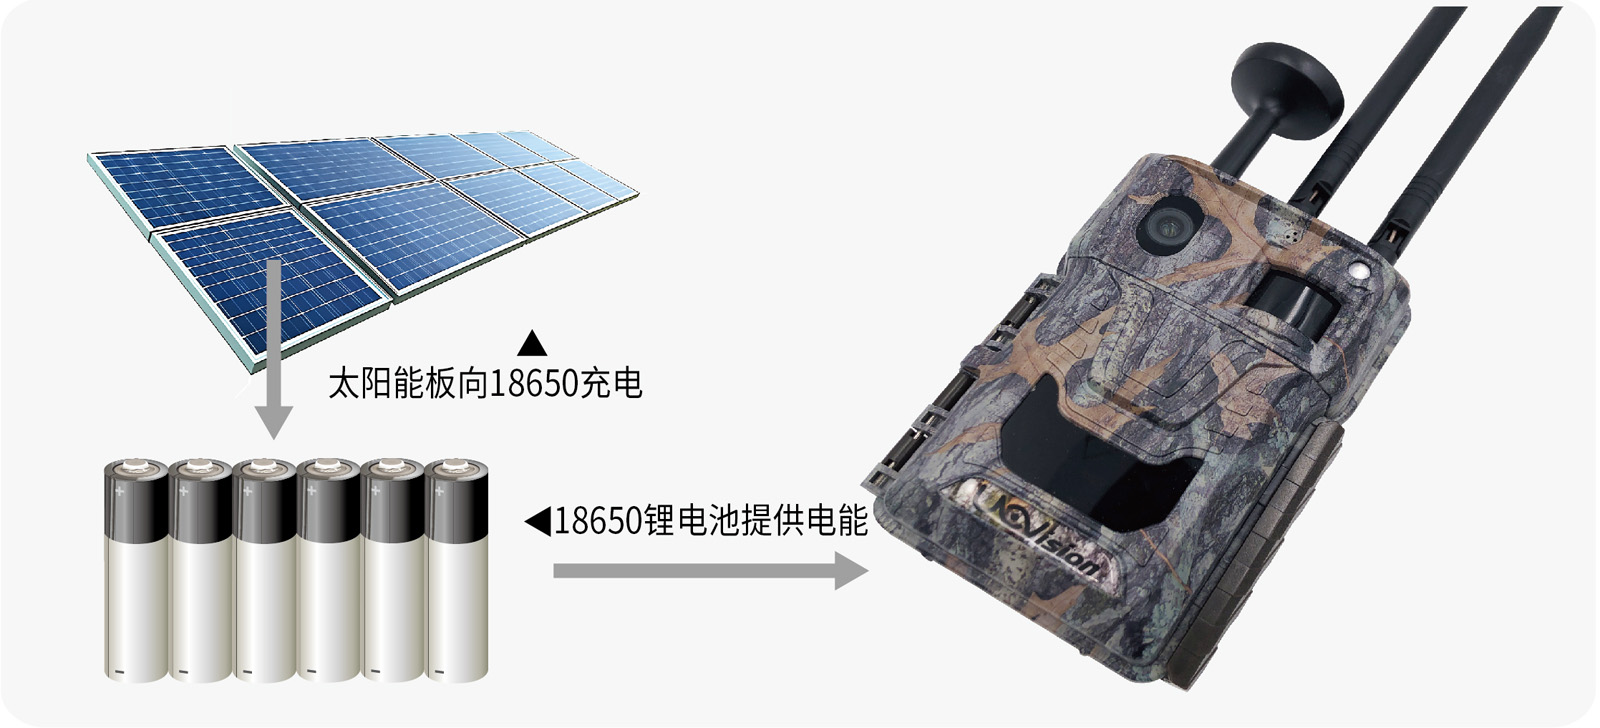 支持太阳能与锂电池充电实现永久续航-01.jpg